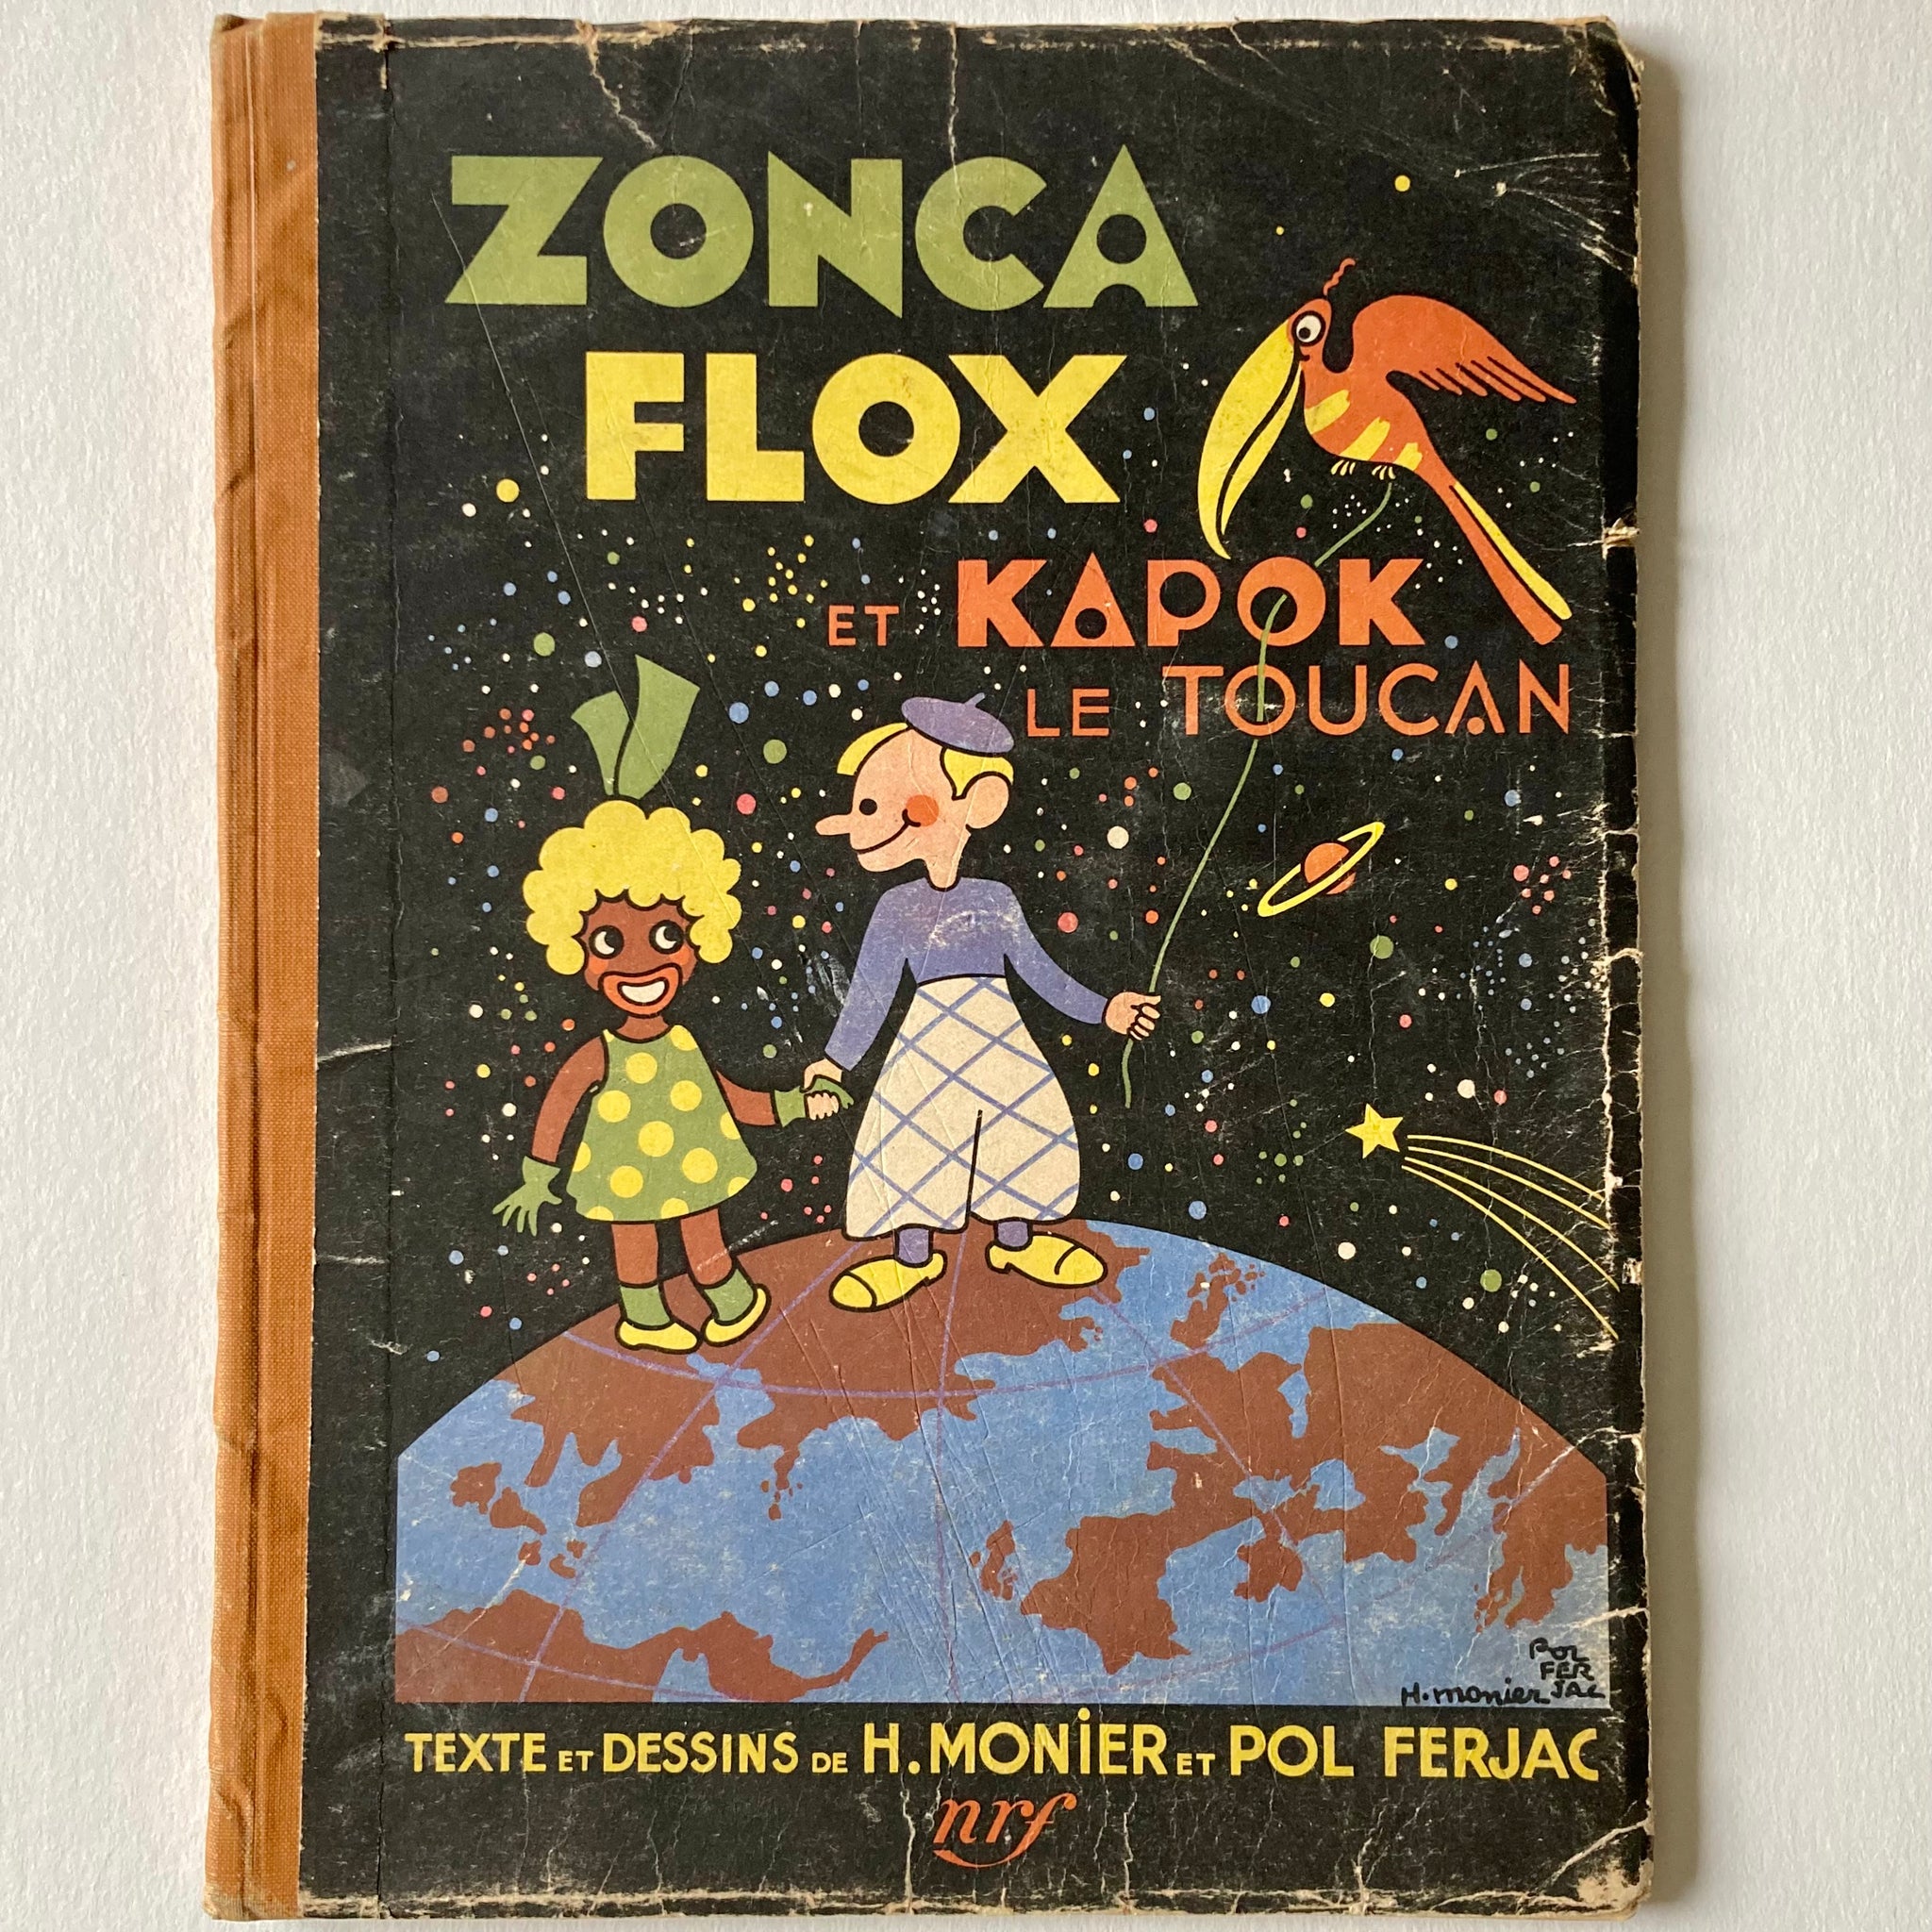 Zonca, Flox et Kapok le toucan